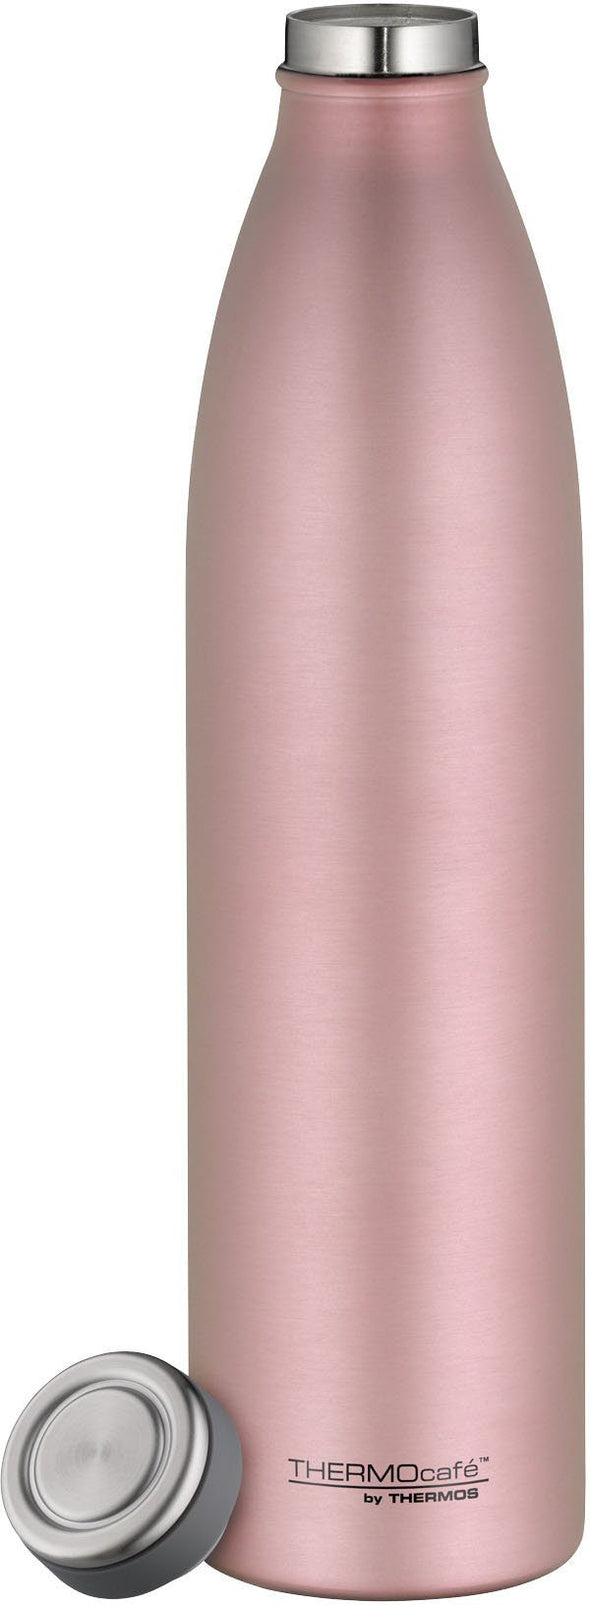 Sticla termica ThermoCaféTC roz - LunaHome.ro